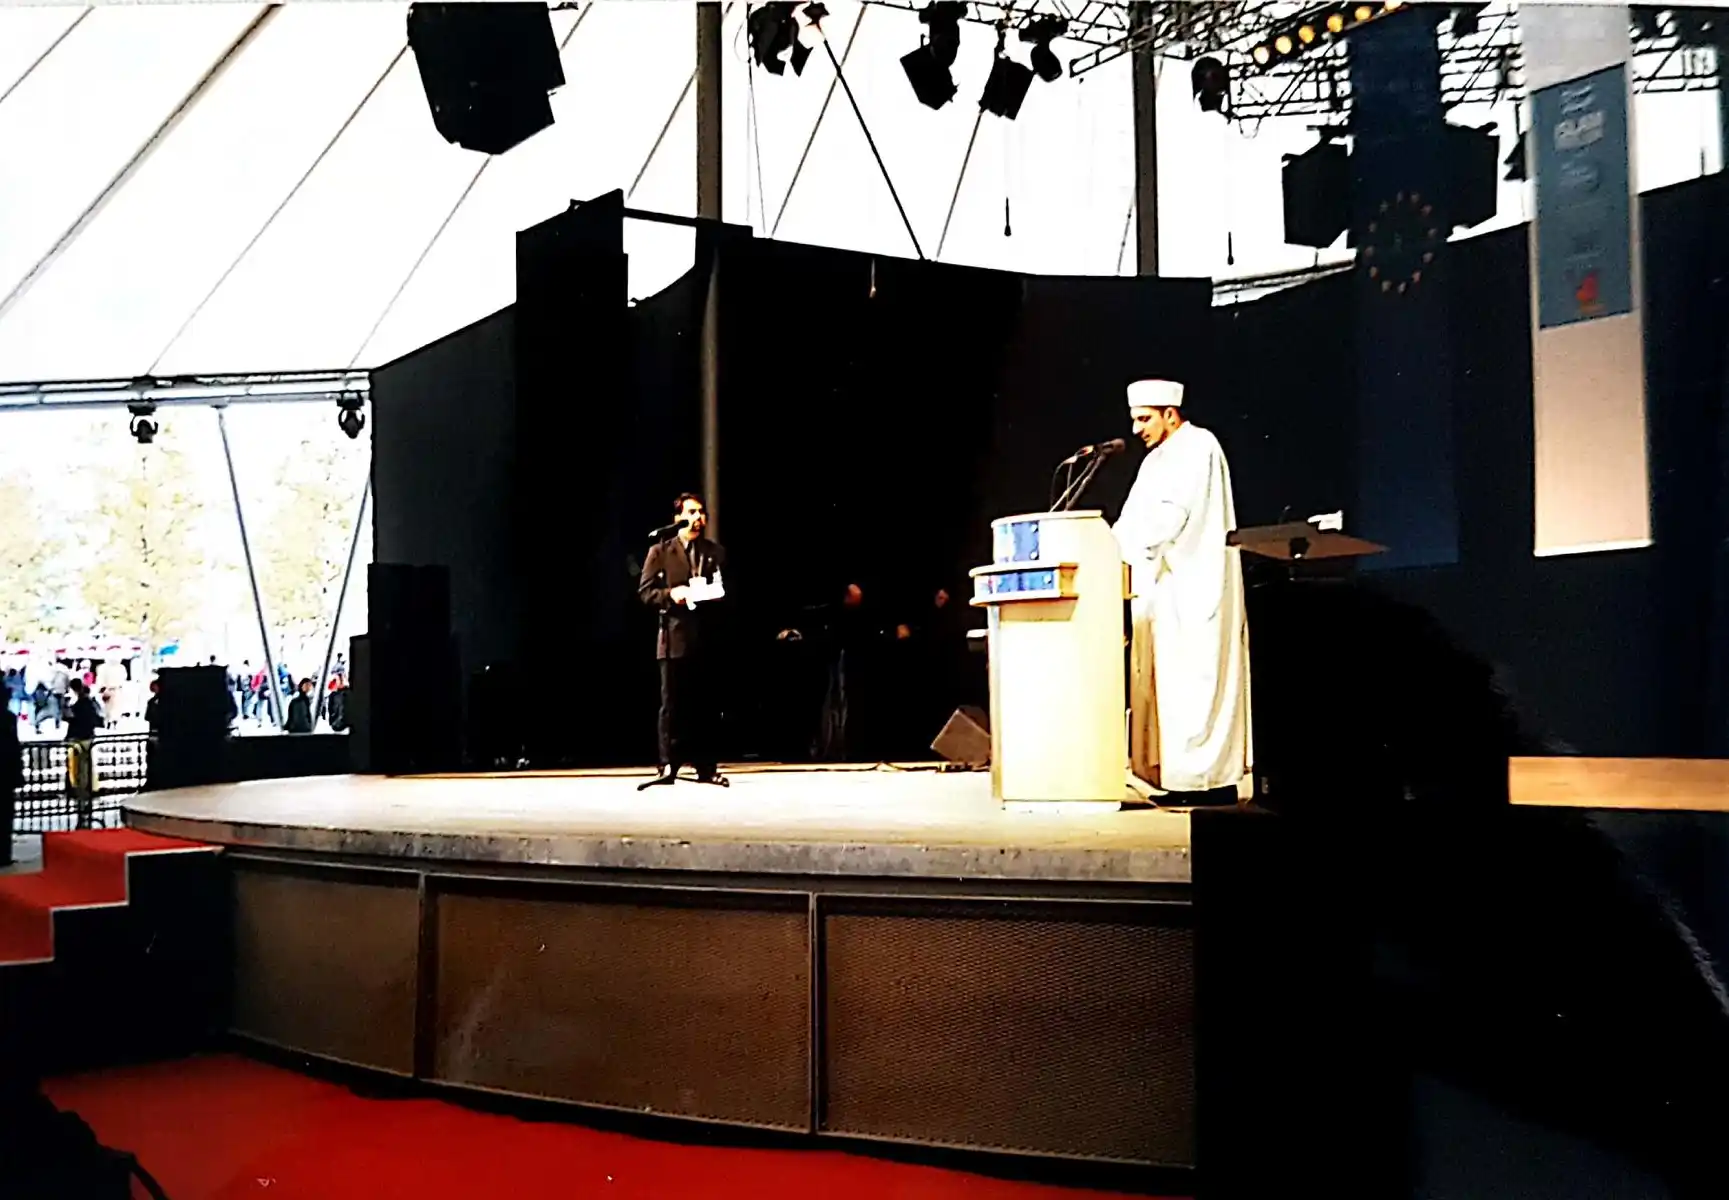 Abbildung-eines-Imams-beim-islampavillon-bei-der-expo-in-hannover-im-jahr-2000-IISW